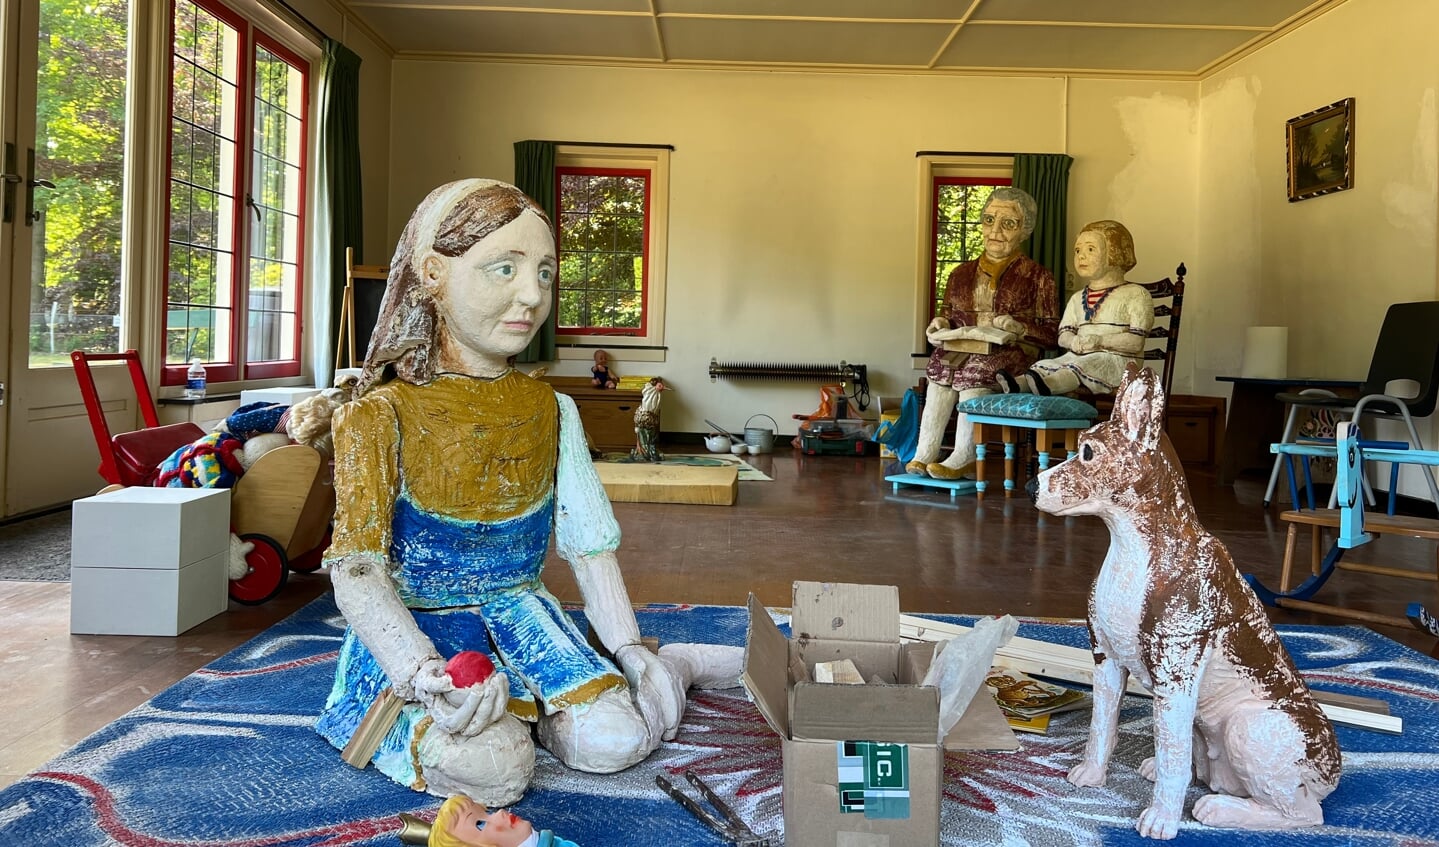 Het diorama in het voormalige speelhuisje van de prinsesjes. De poppen beelden prinses Juliana uit in diverse levensfasen.